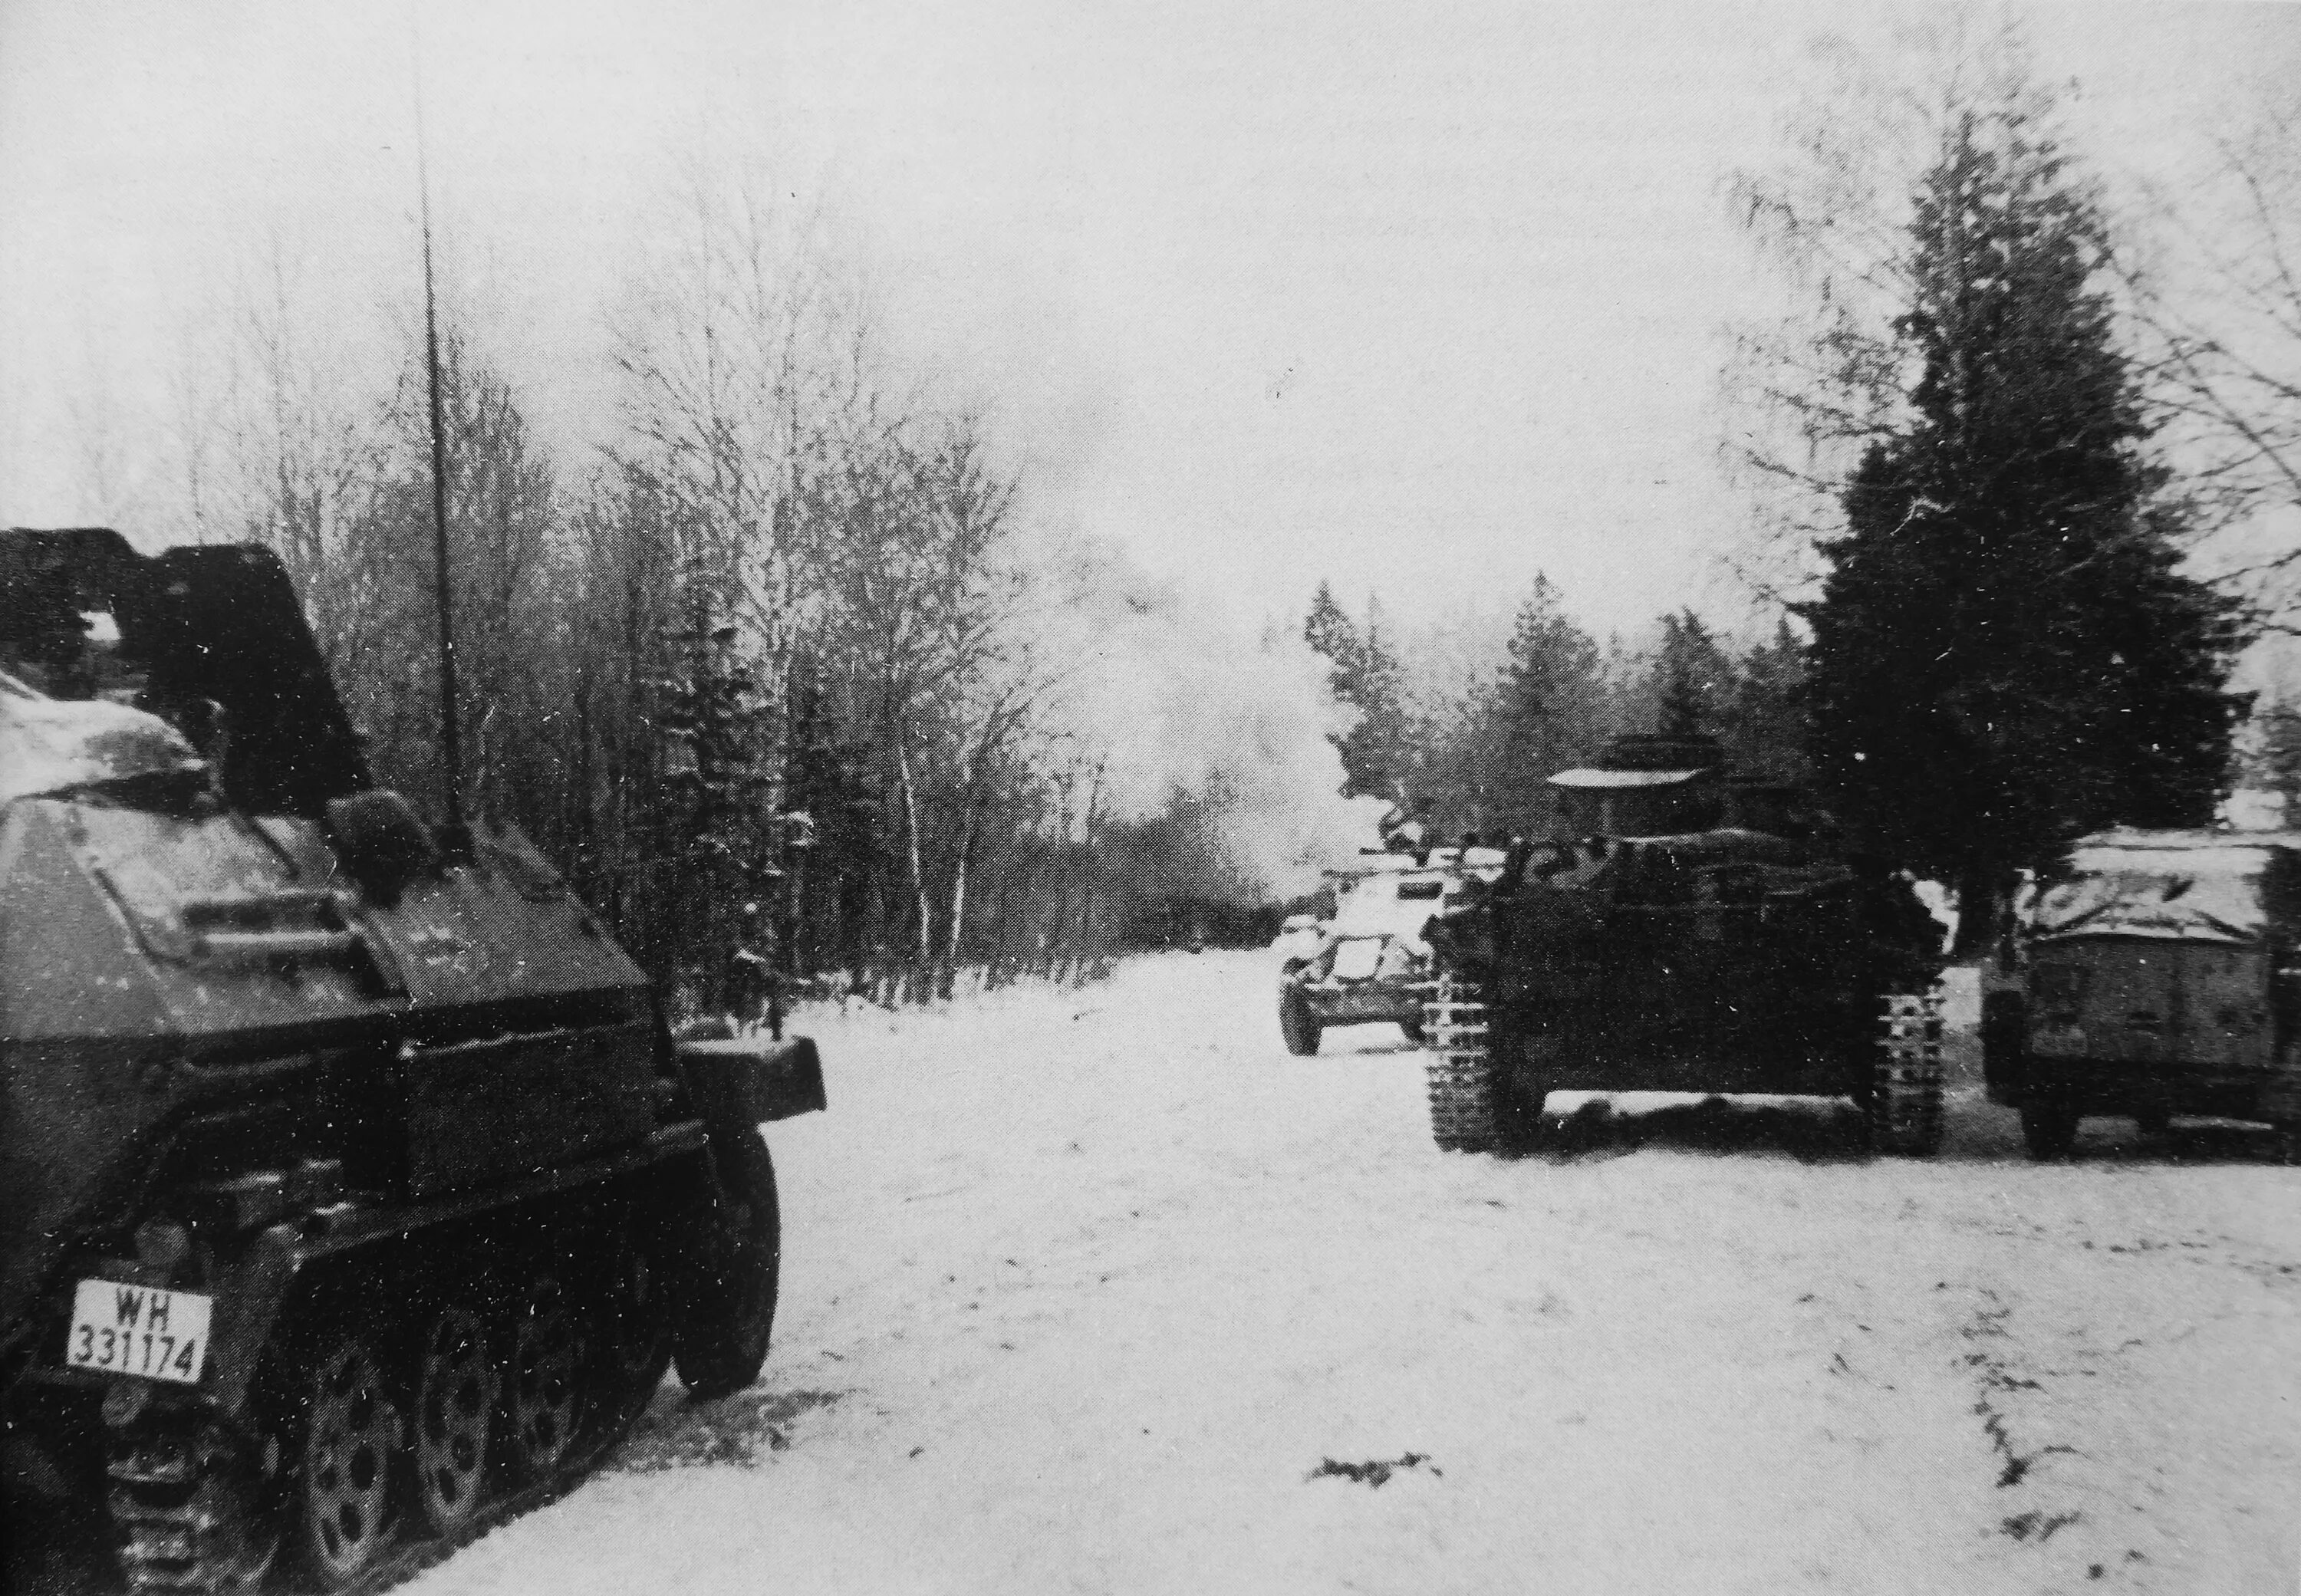 13 танков на 7 рот. 7 Танковая дивизия вермахта 1941 PZ Kpfw i. 11 Танковая дивизия вермахта 1941. 10-Я танковая дивизия (Вермахт). 20-Я танковая дивизия вермахта 1941 год.